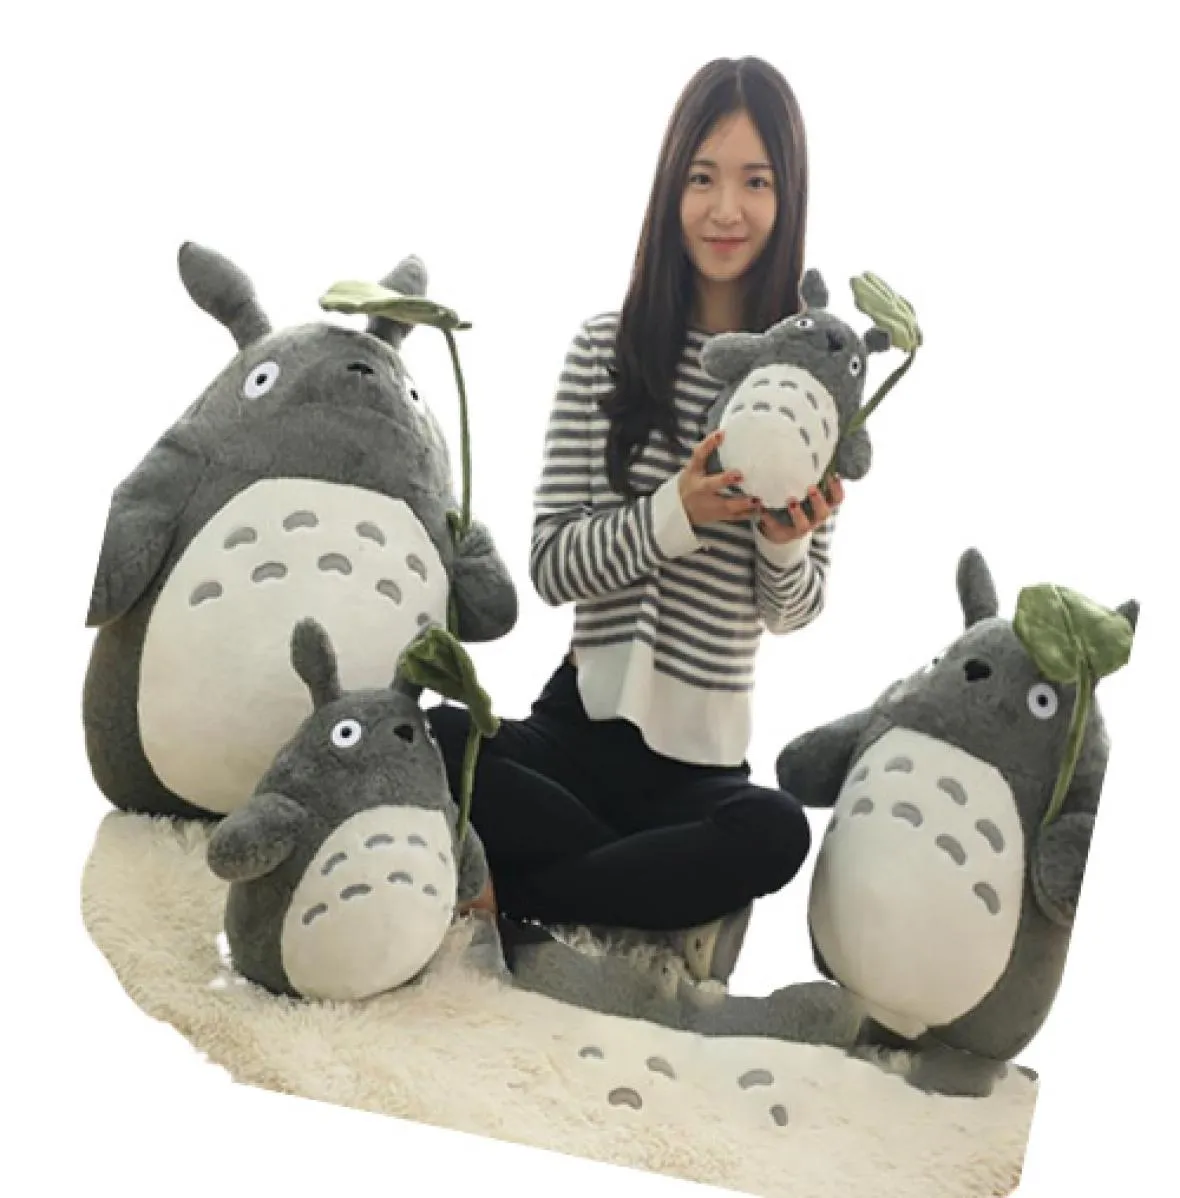 30 см Мягкая кукла Тоторо INS, стоящая Kawaii, Япония, мультяшная фигурка, плюшевая игрушка серого кота с зонтиком из зеленых листьев, подарок для детей6820328